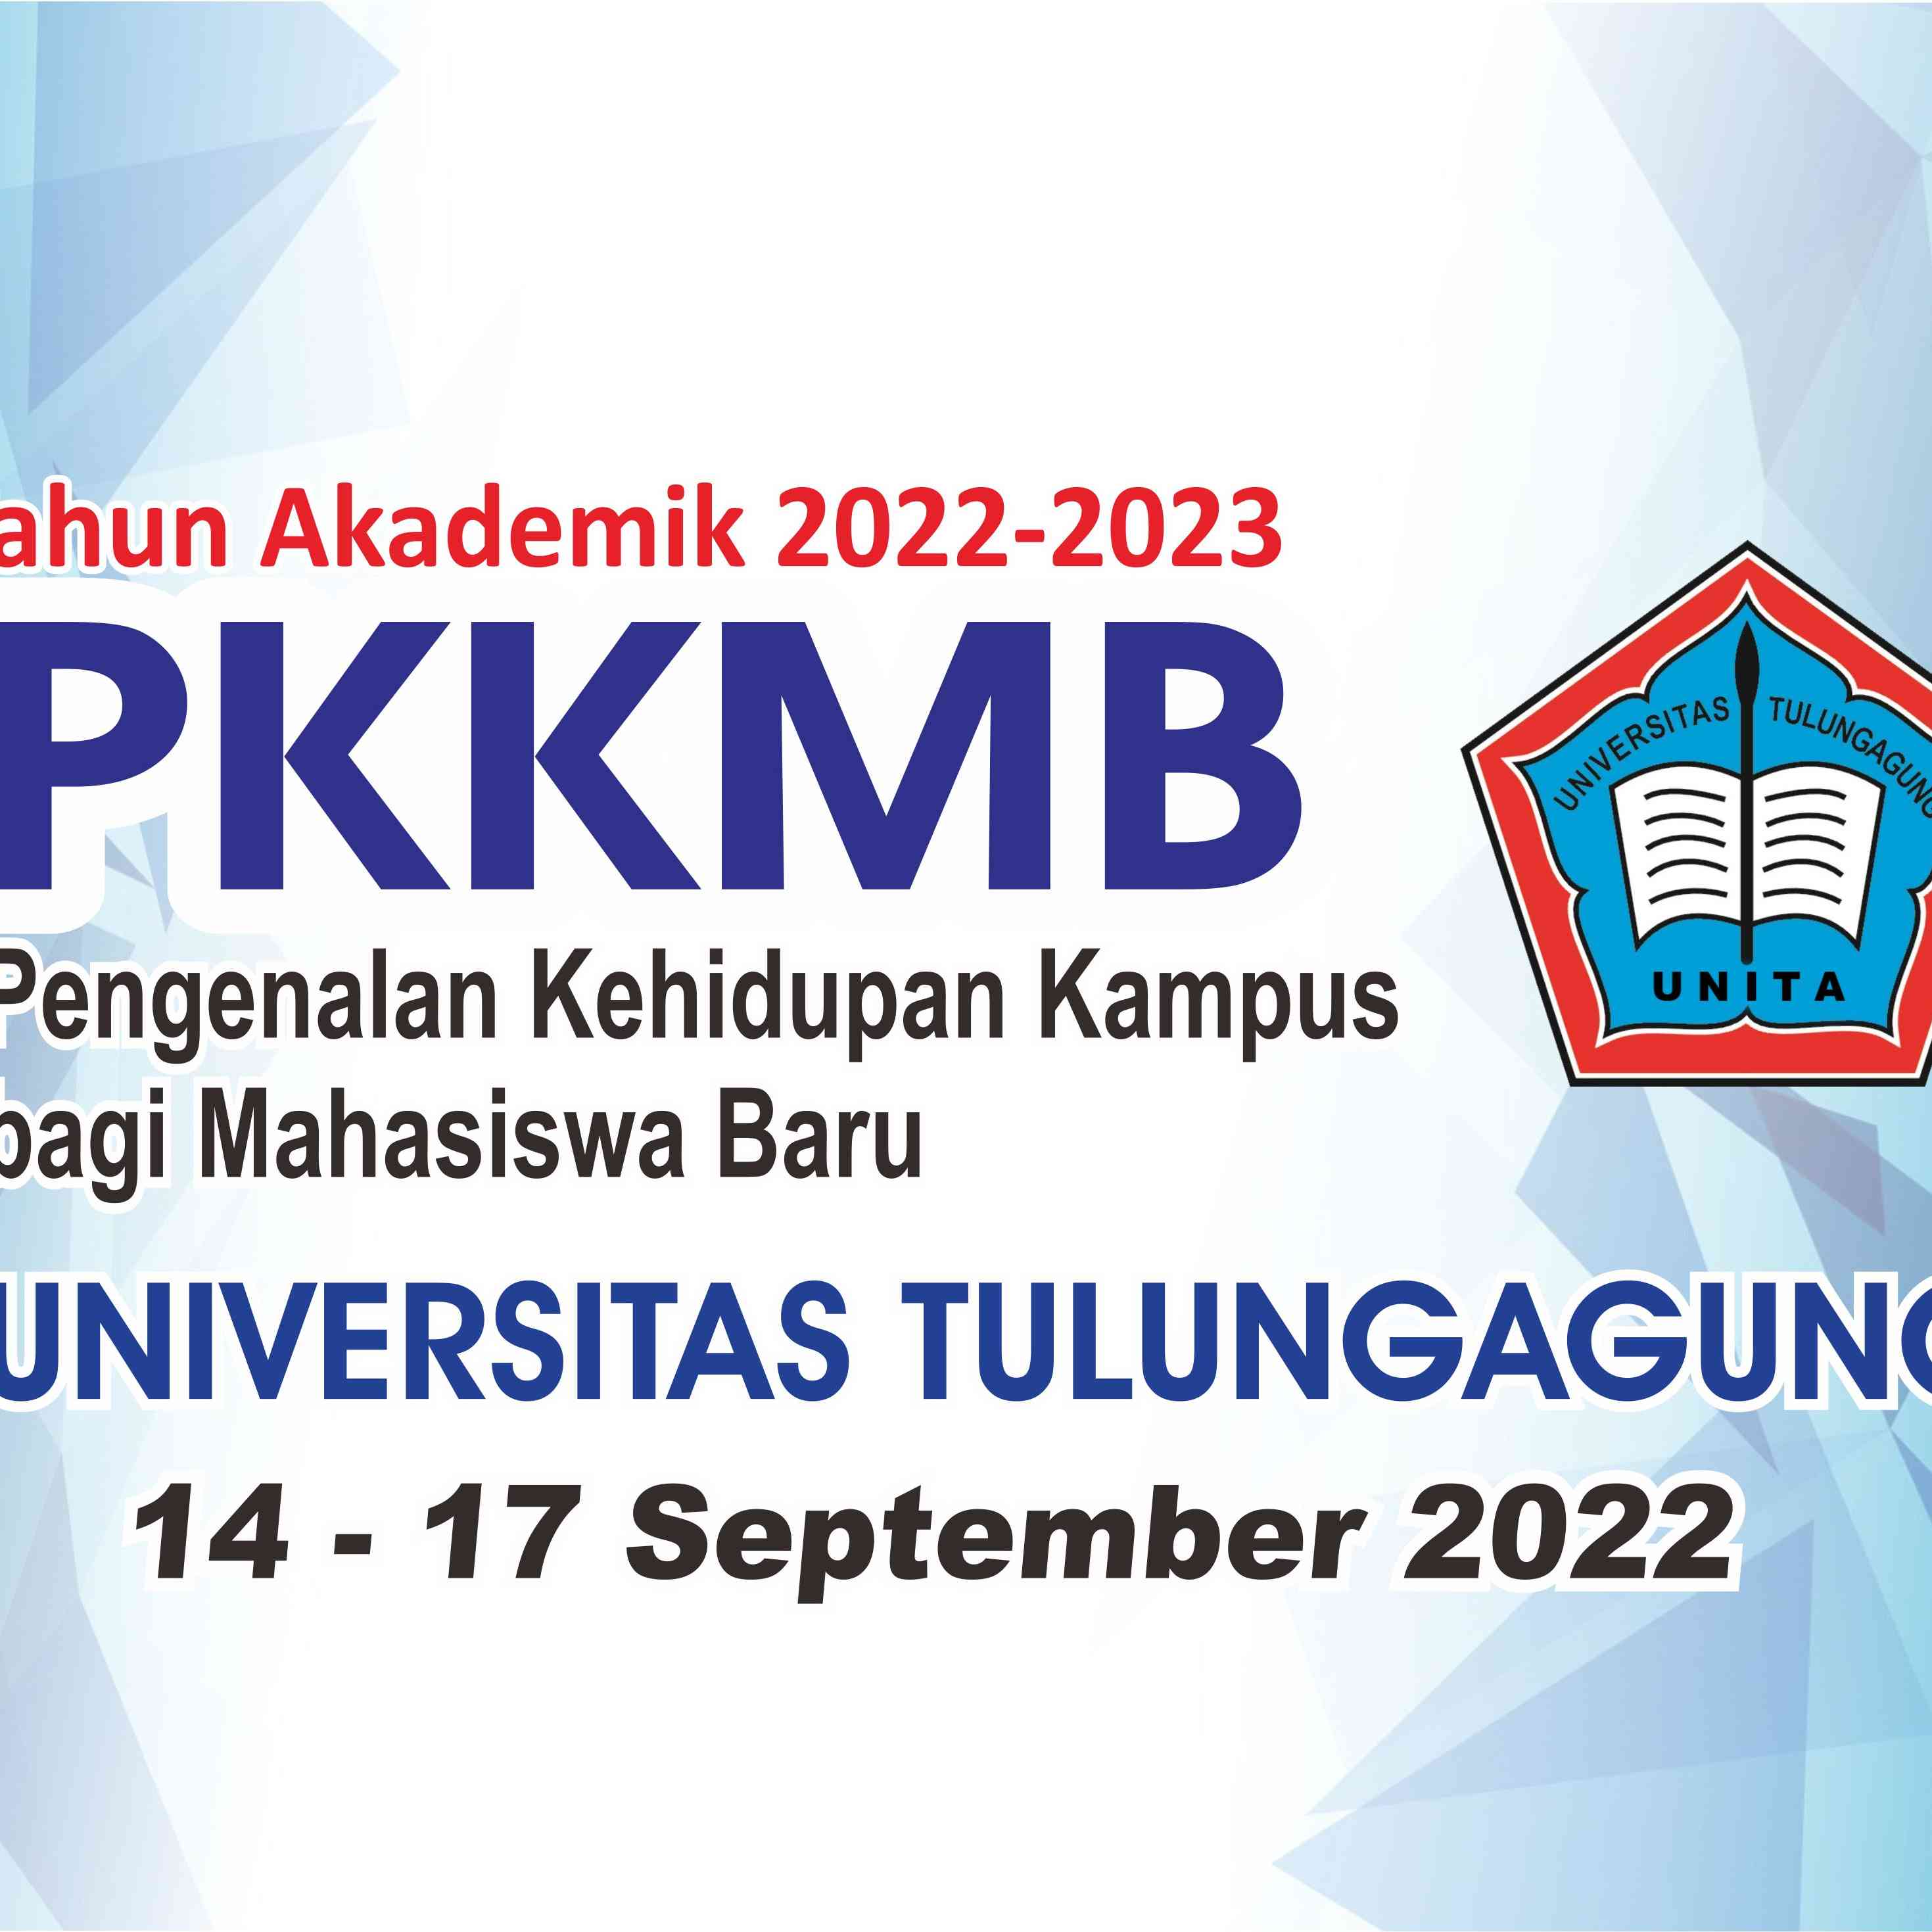 PKKMB UNITA 2022-2023